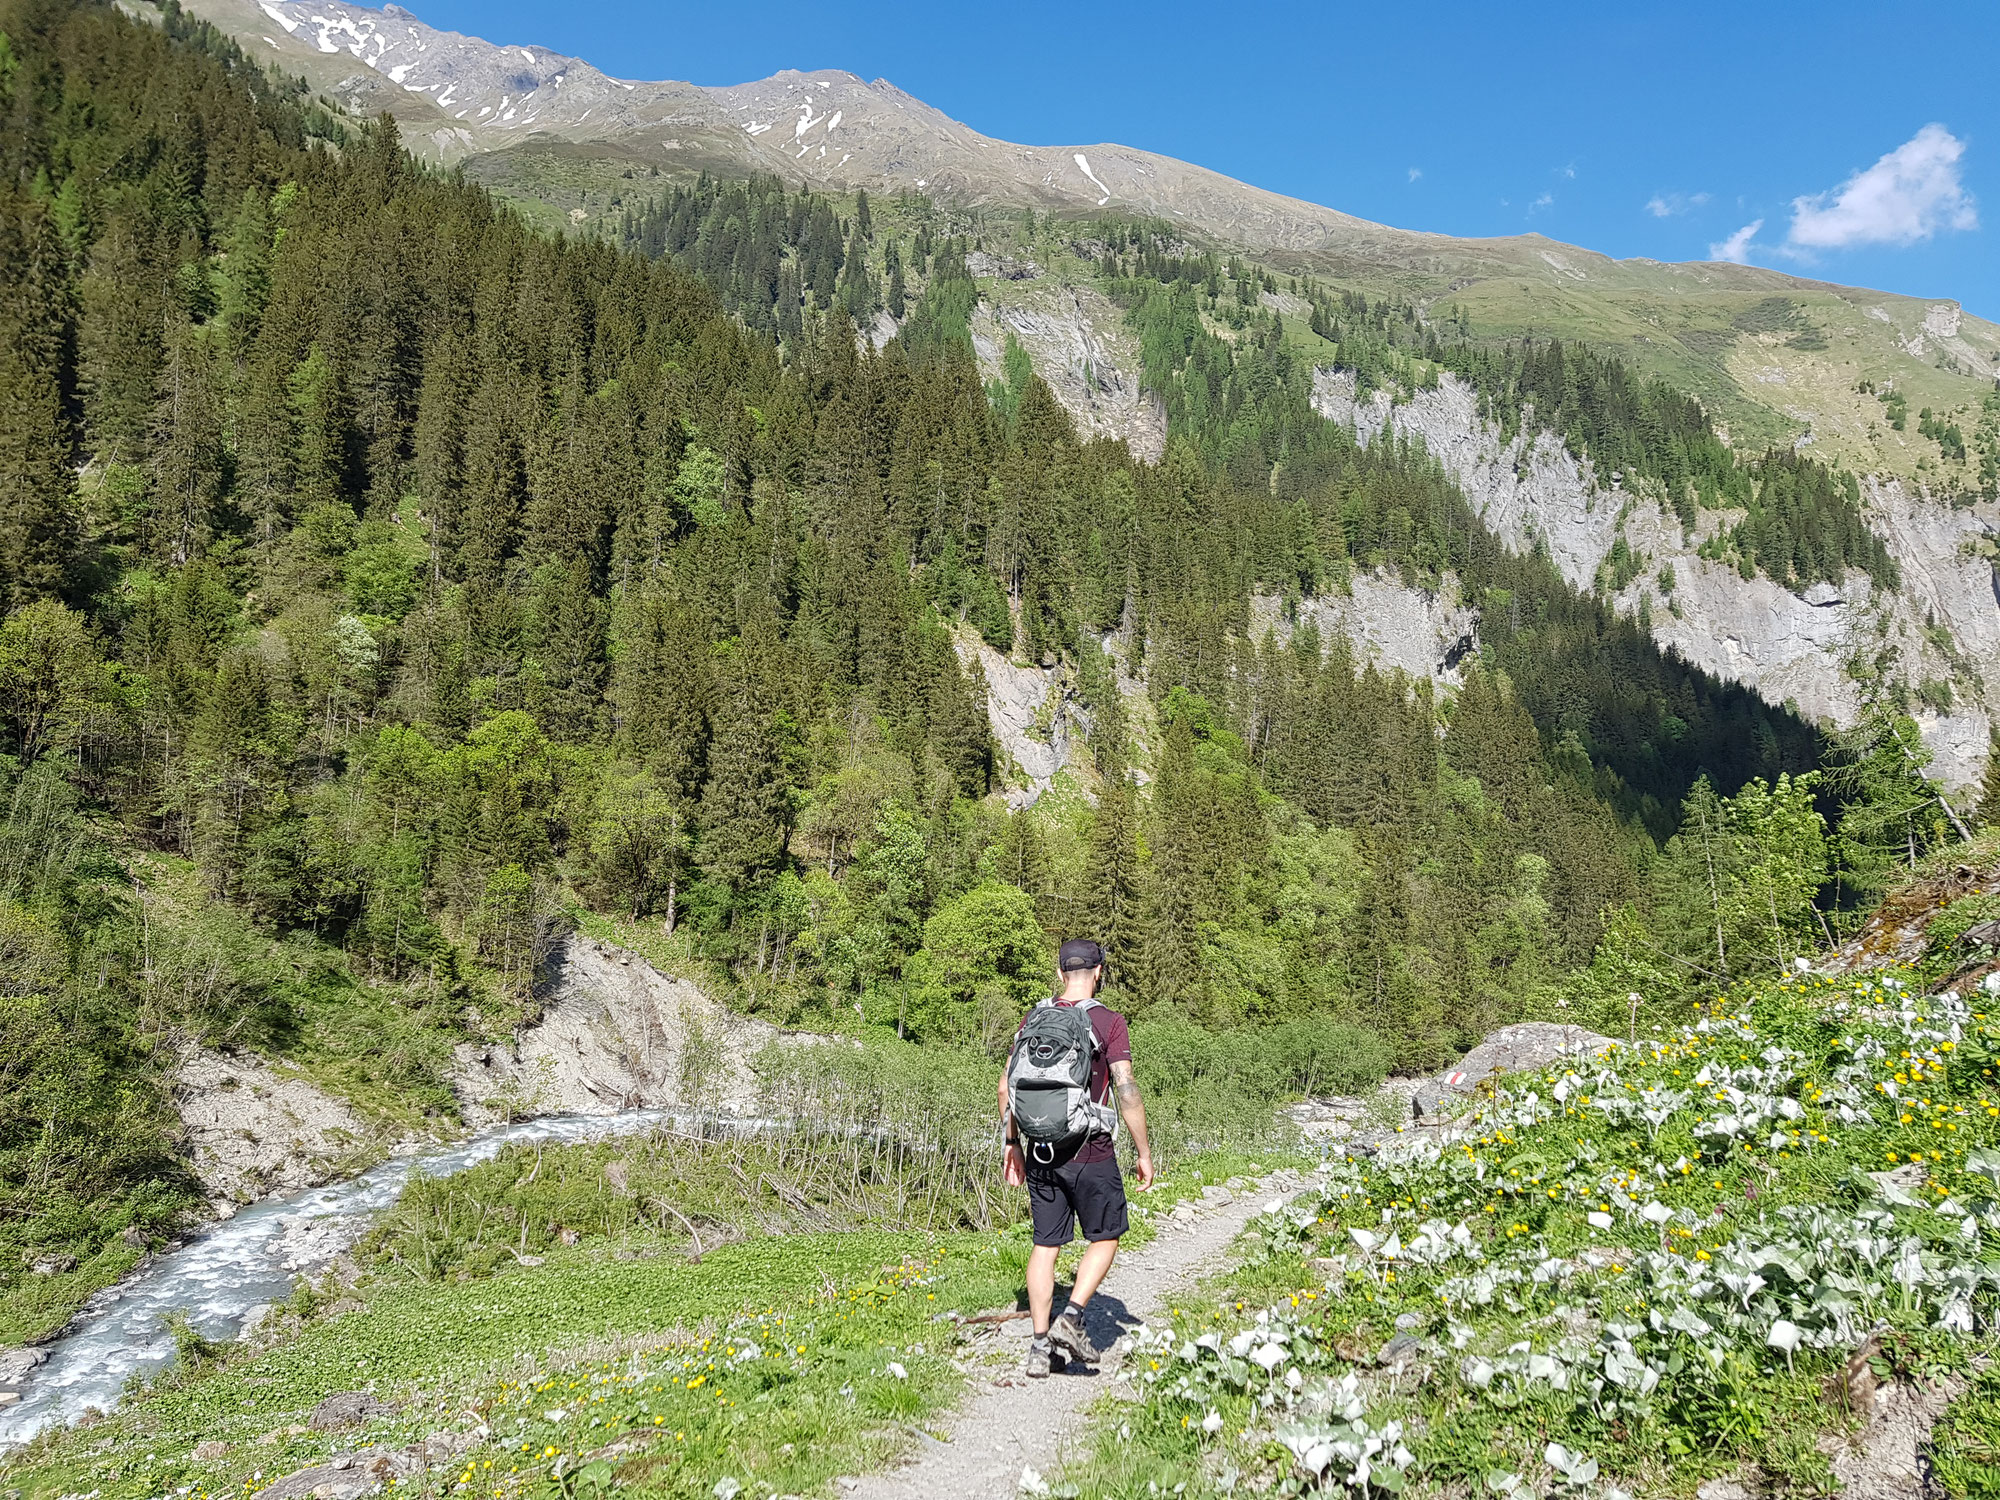 Wanderung: St. Martin - Sardona Alp - St. Martin (14km / 850HM)